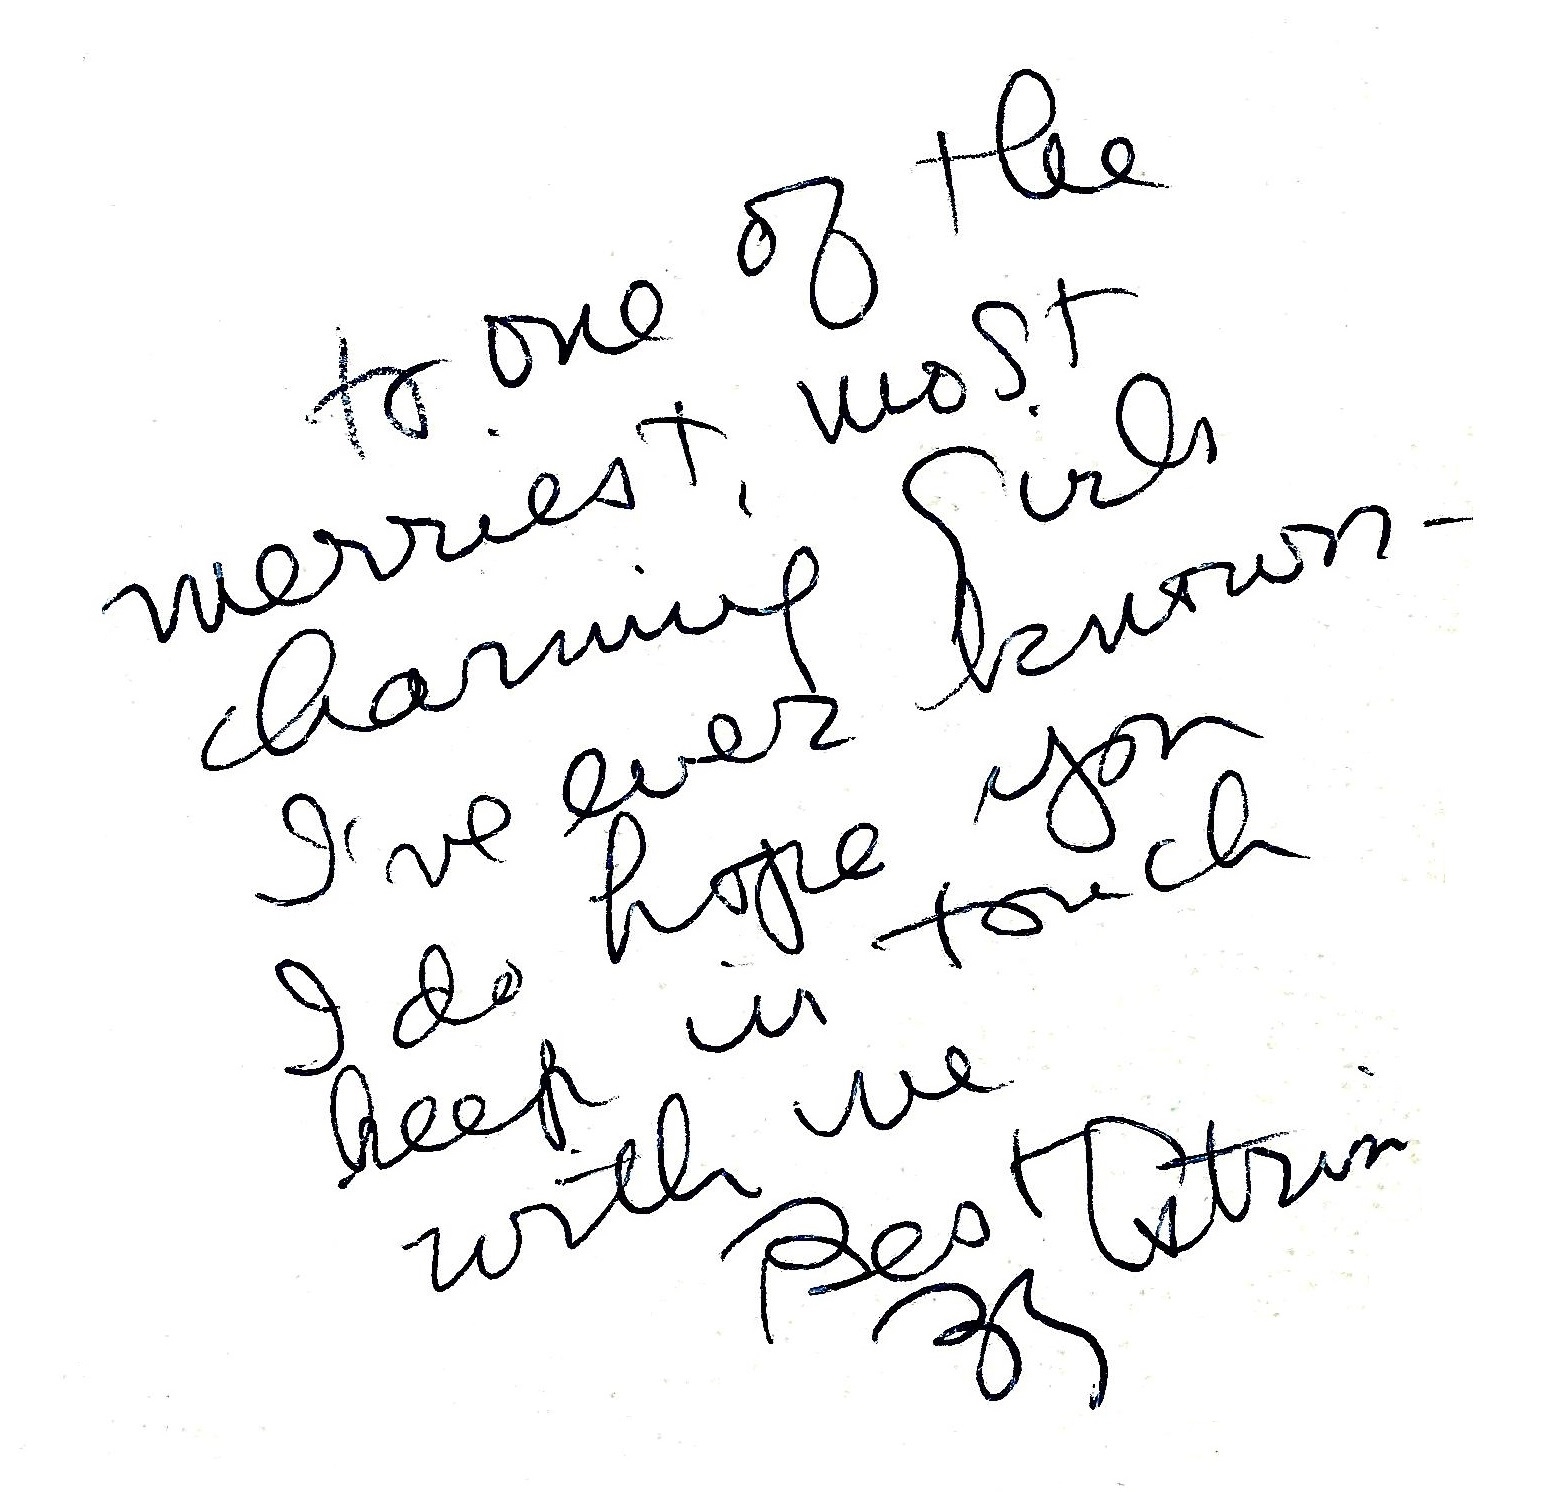 Zelda (Zee Zee) Kerner's handwriting.